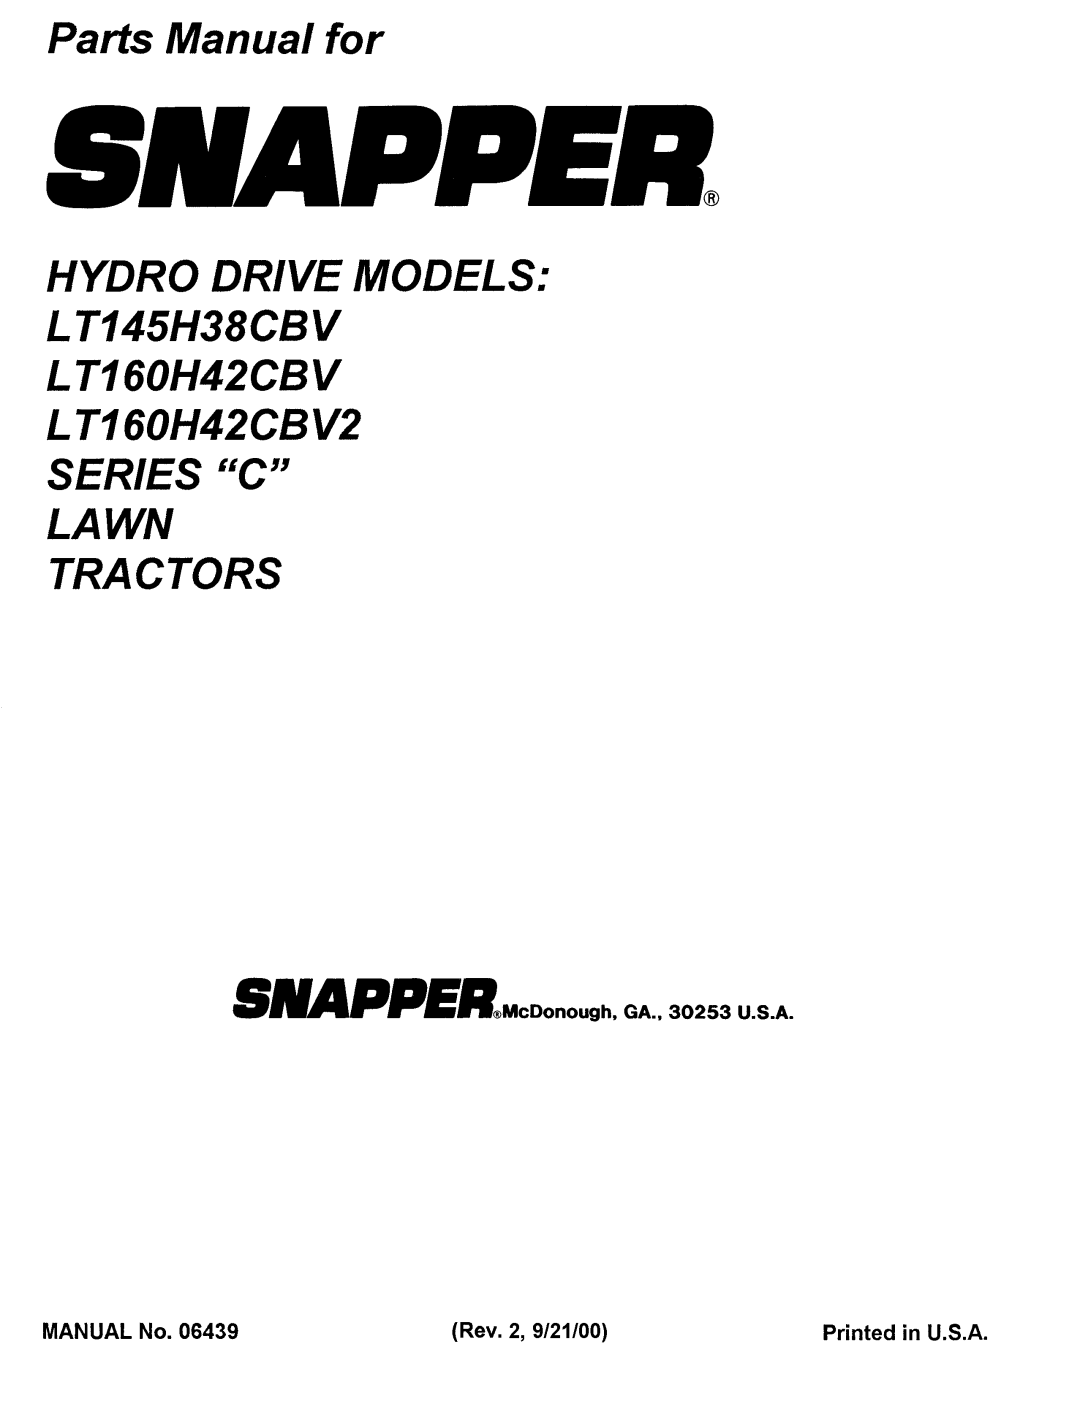 Snapper LT145H38CBV, LT160H42CBV2, Series C manual 